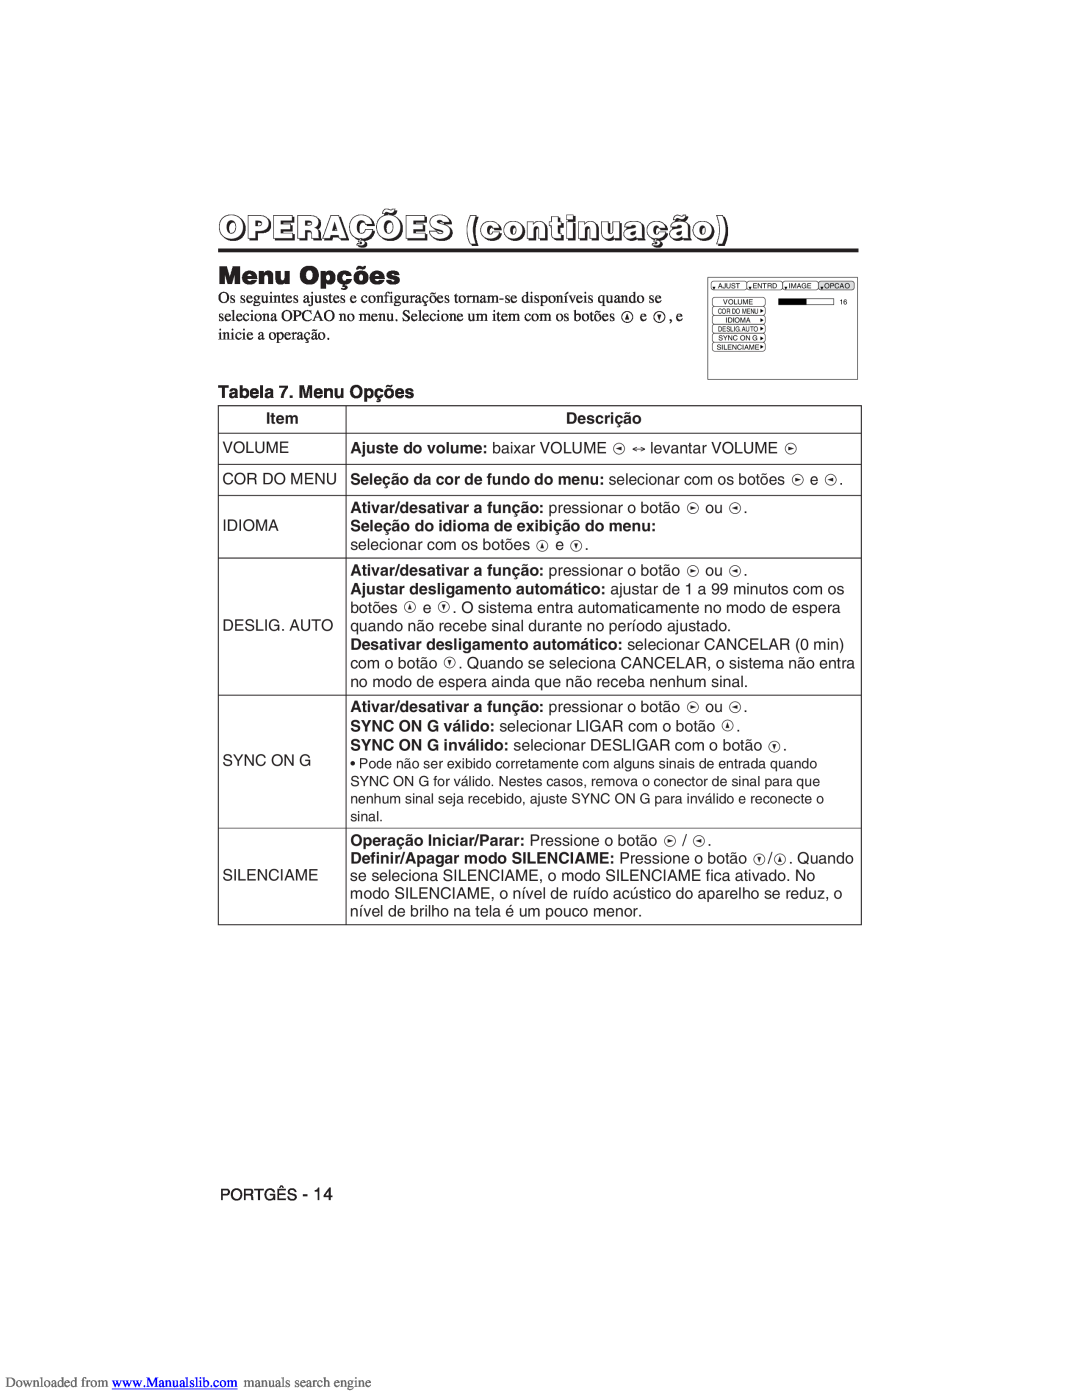 Hitachi CP-X275W user manual Tabela 7. Menu Opções, OPERAÇÕES continuação 